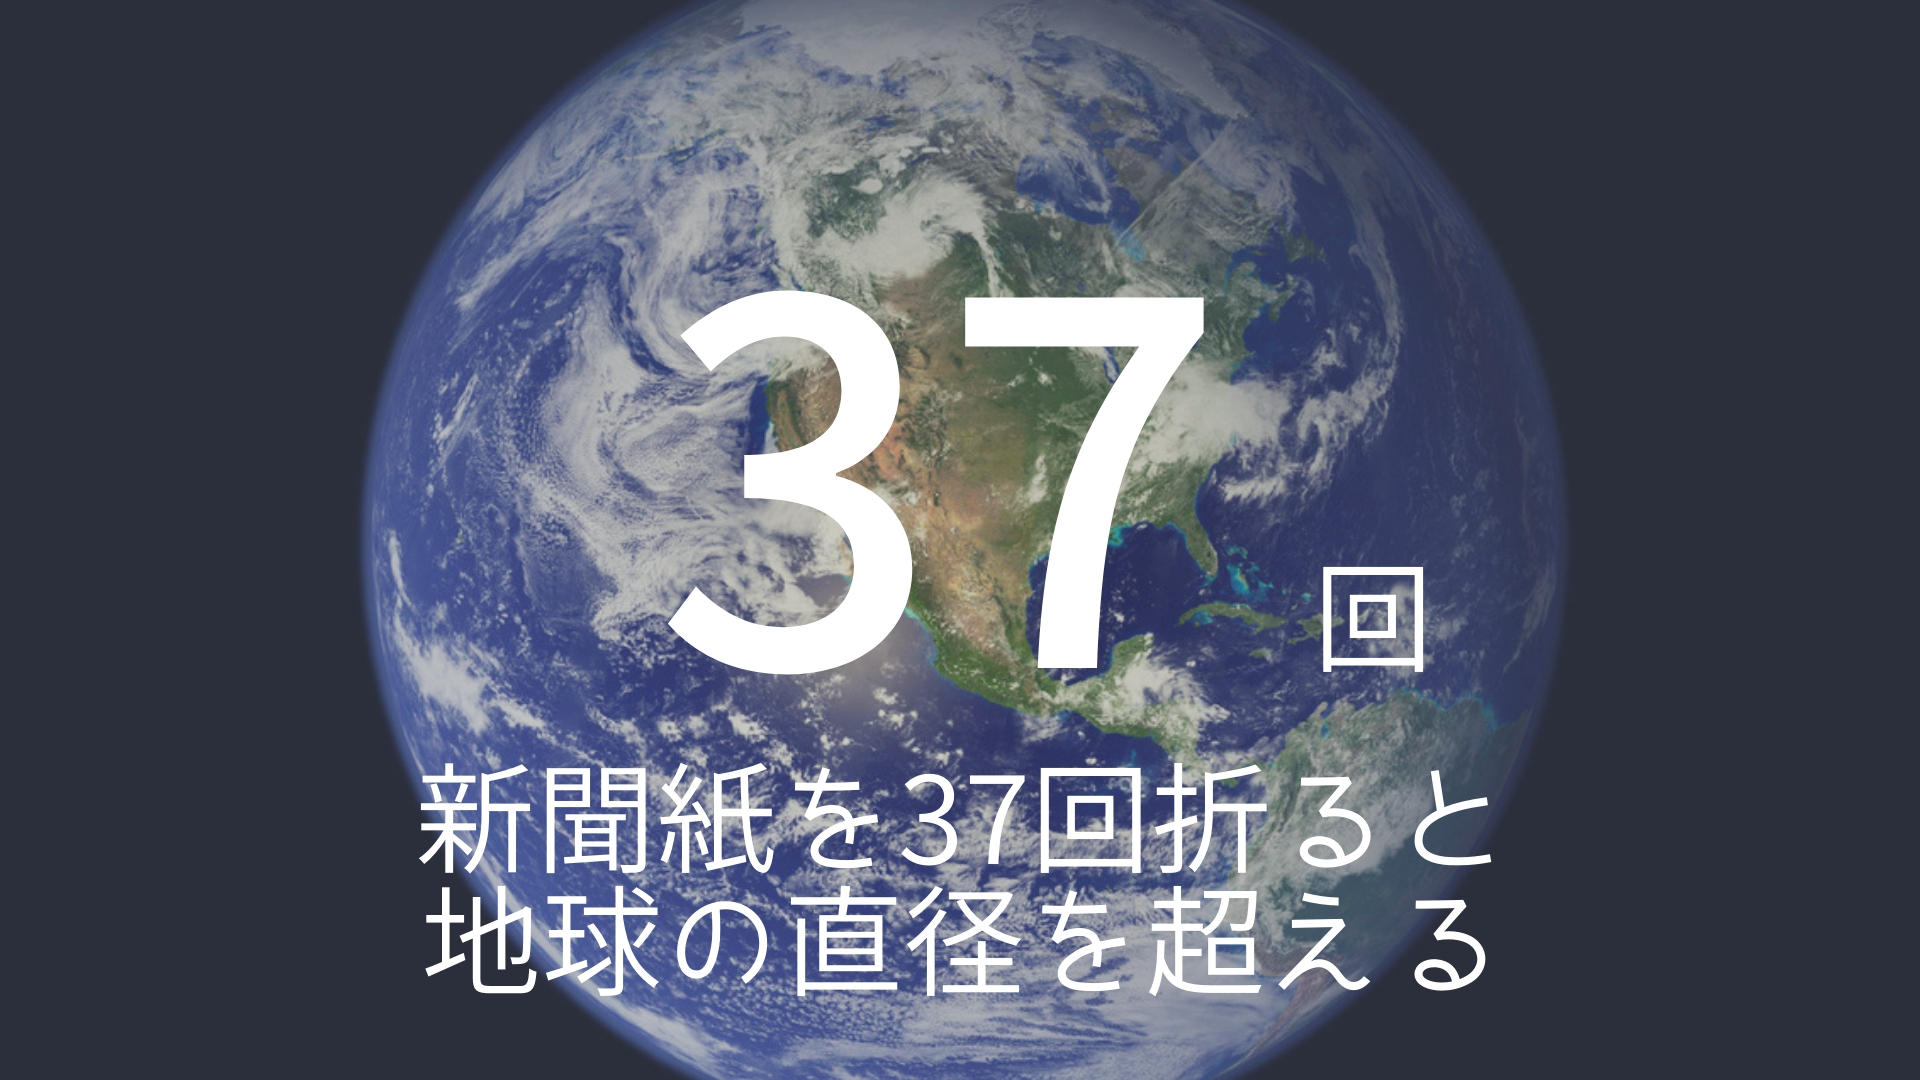 「37回」 >>> 新聞紙を37回折ると地球の直径を超える!? その長さ13,743km!